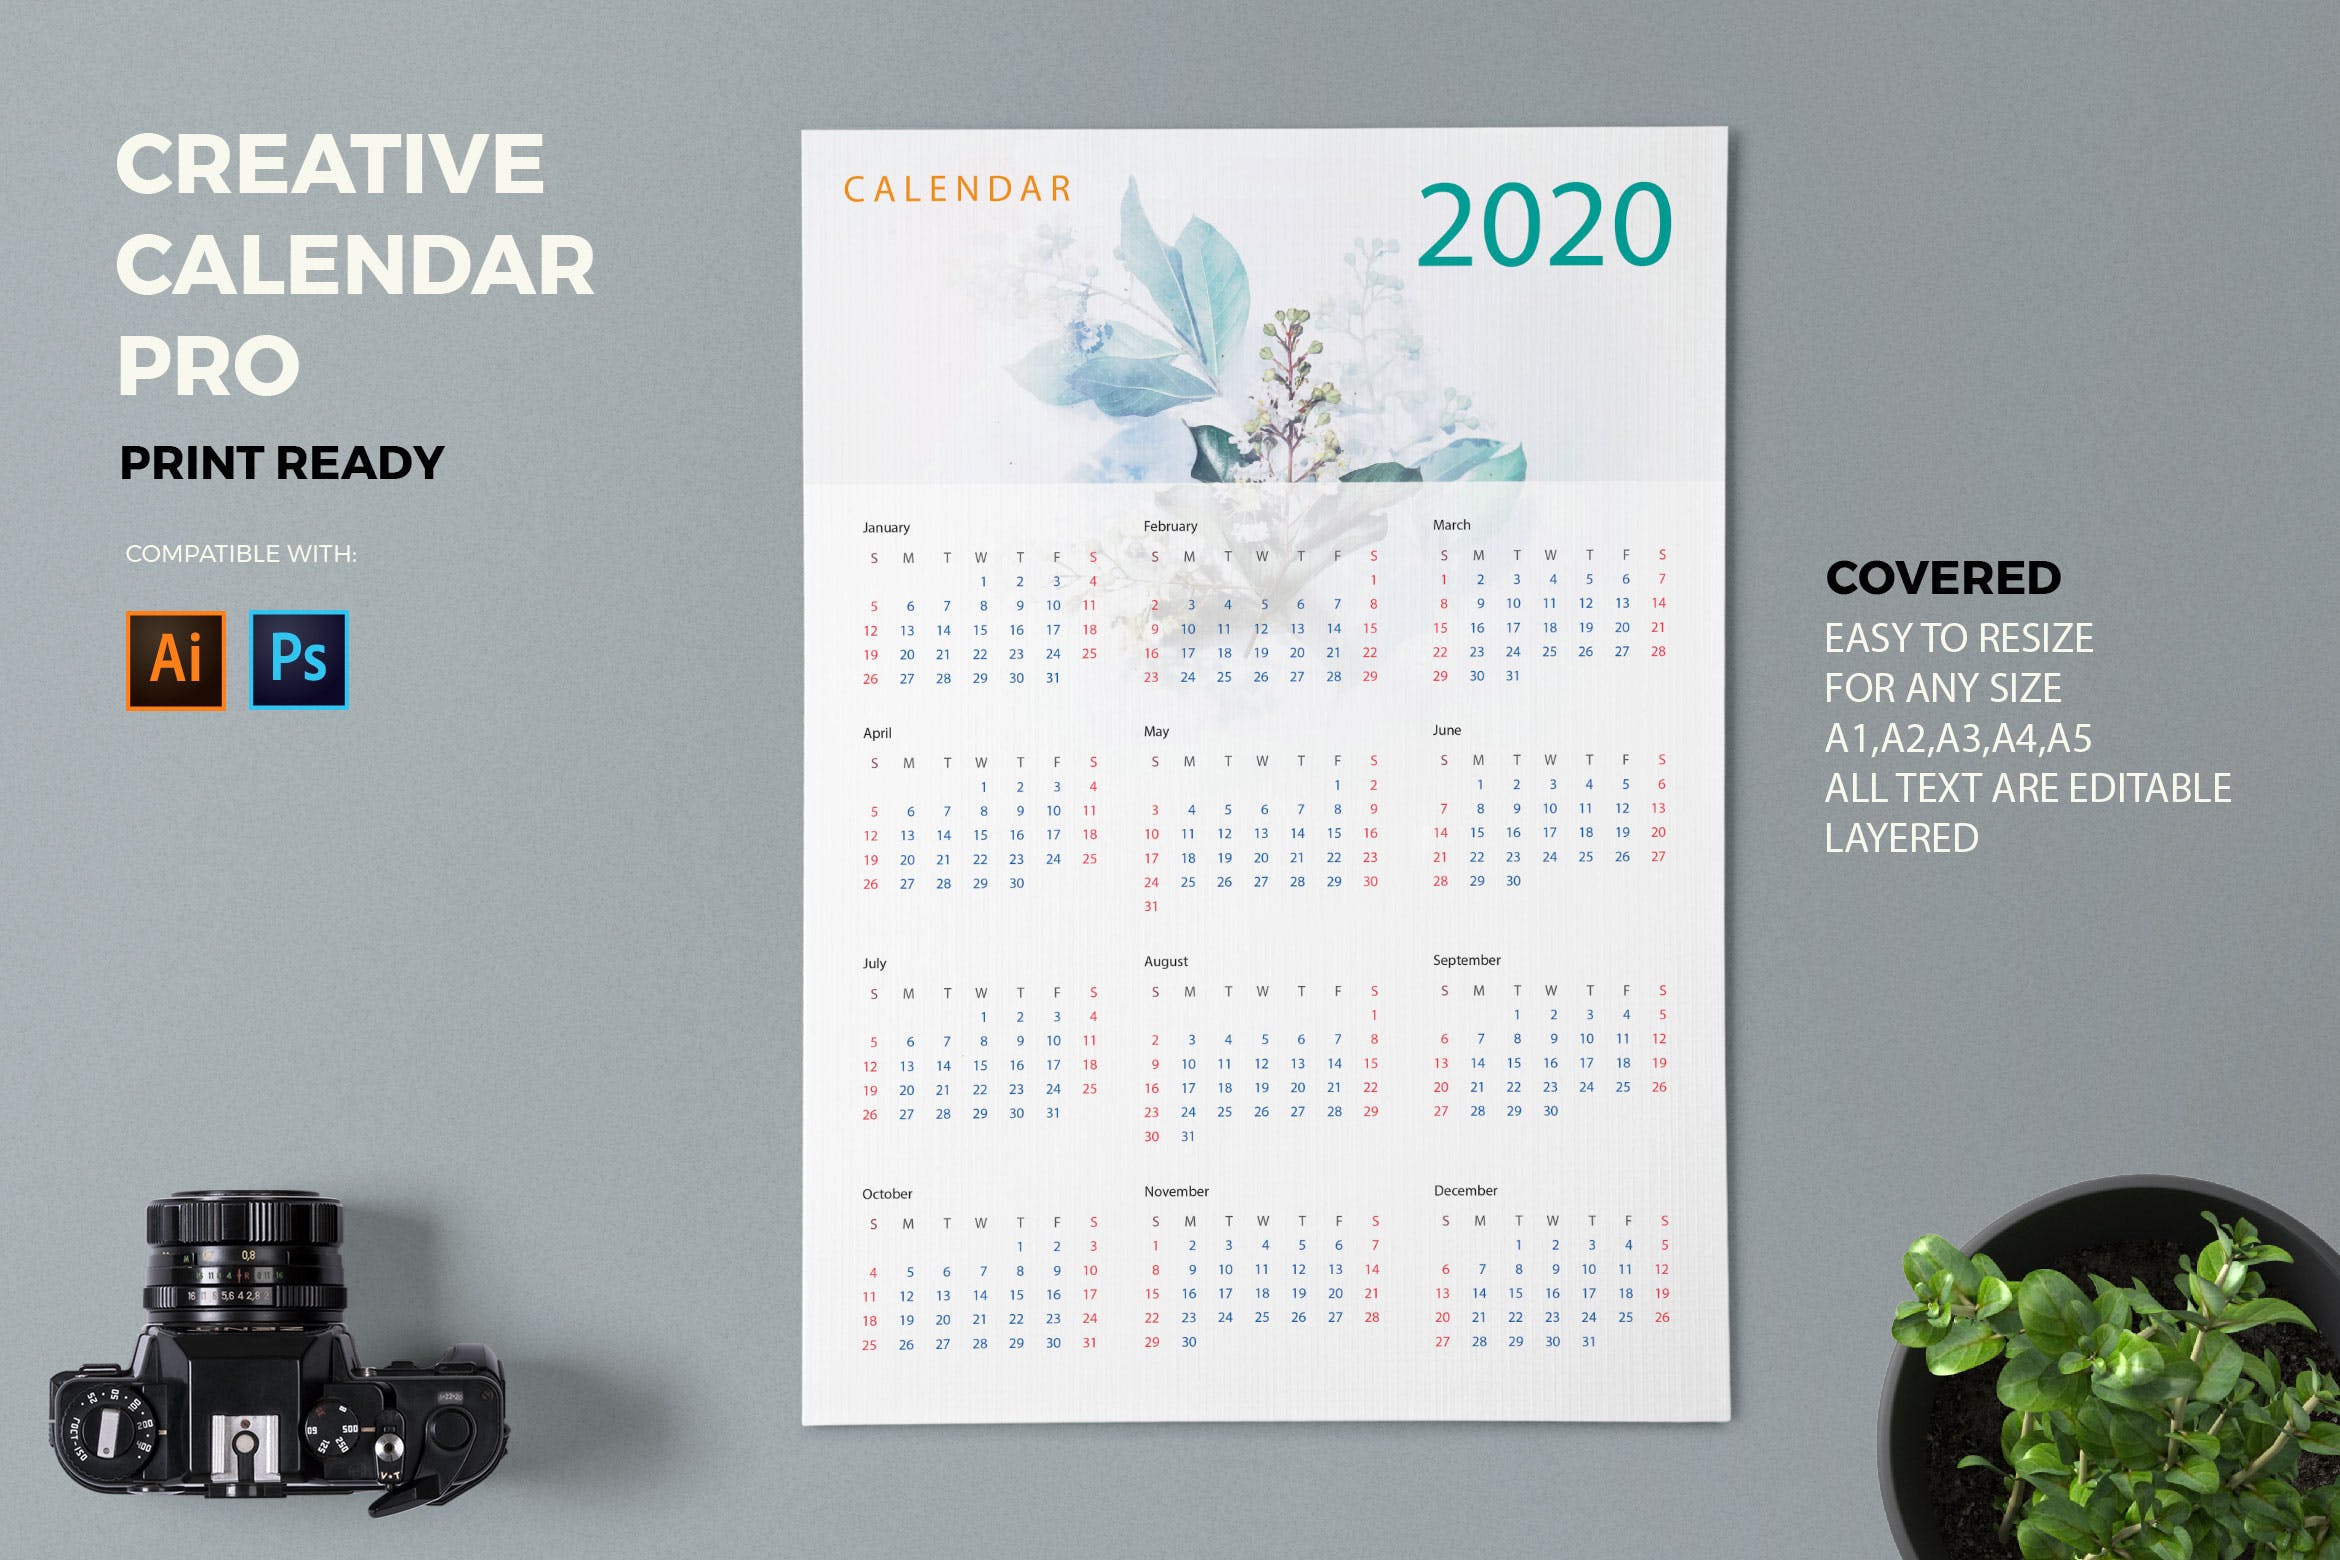 水彩手绘风格2020年历日历设计模板素材 Creative Calendar Pro 2020插图